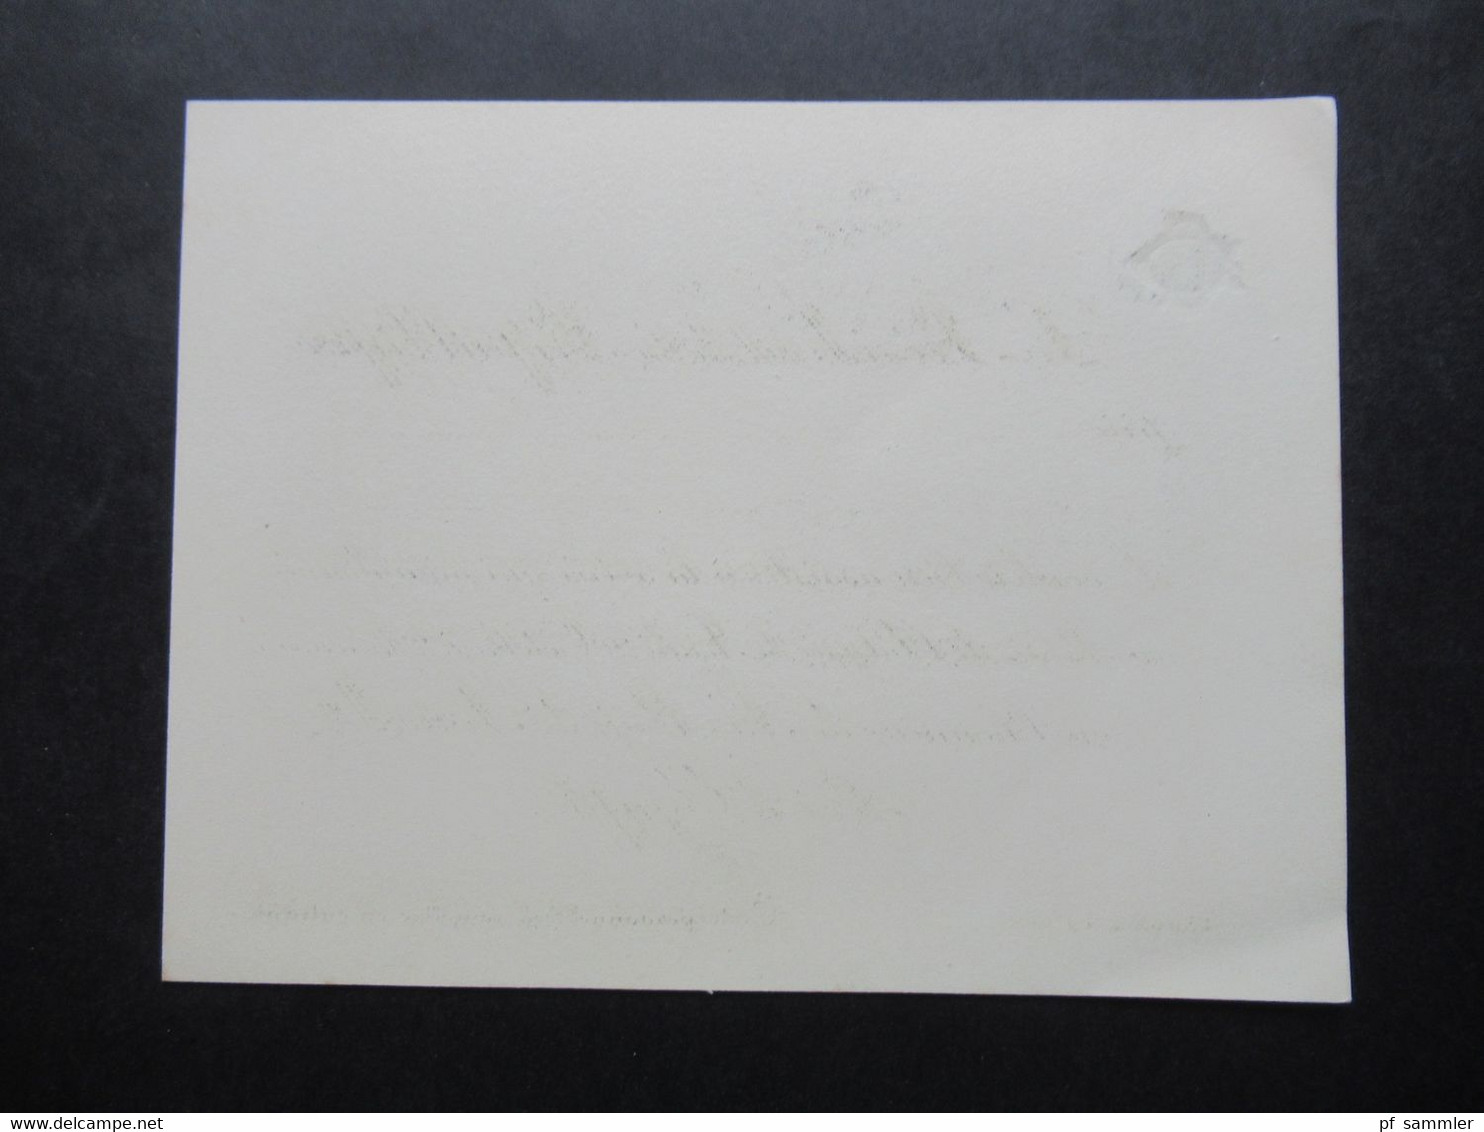 1920er Jahre Einladungskarte vom Präsident Gaston Doumergue zum Besuch Sa Majestre Fouad 1. Roi d'Egypte in Paris